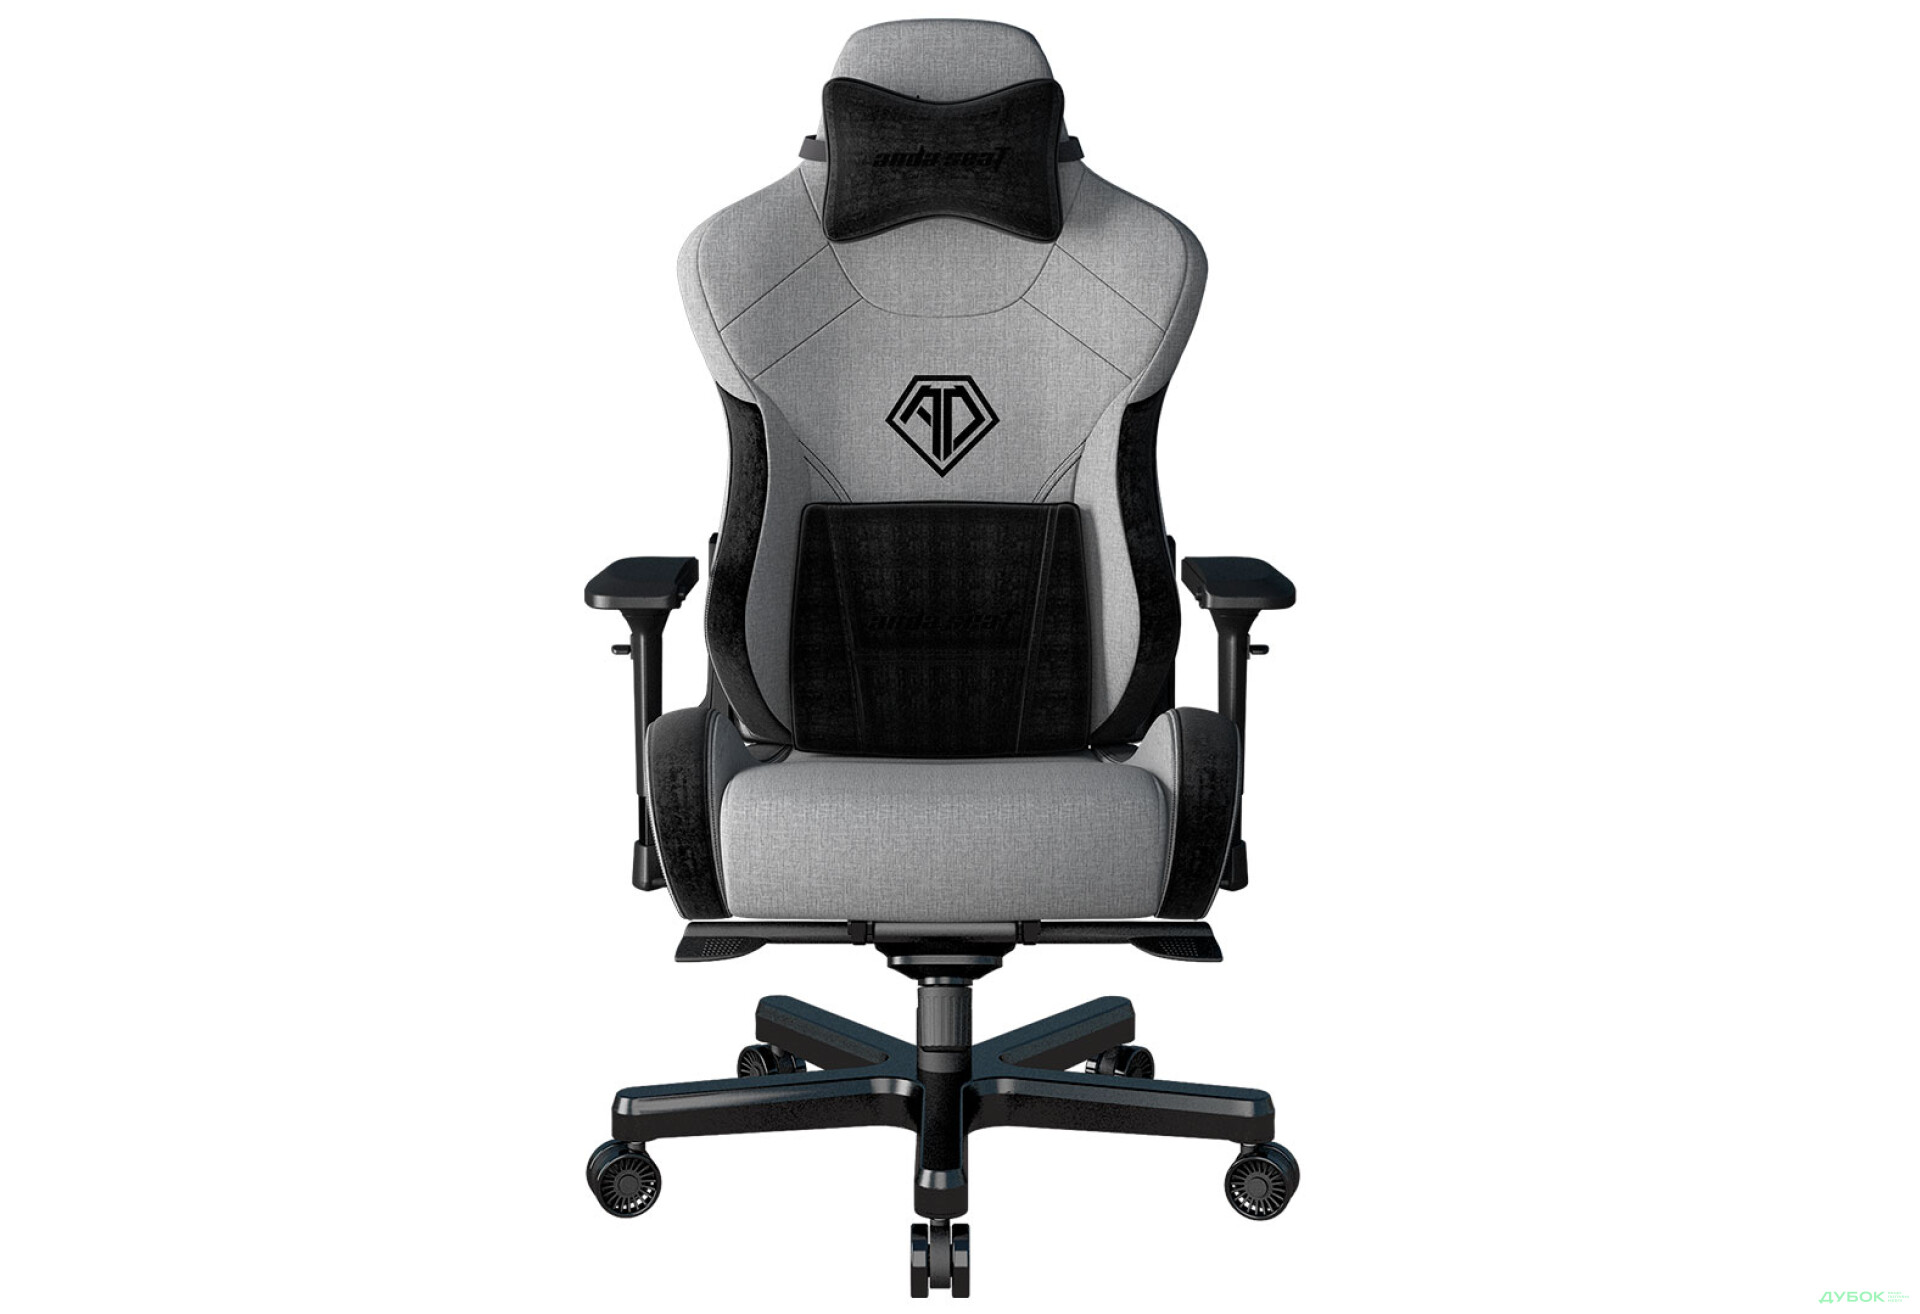 Фото 1 - Компьютерное кресло Anda Seat T-Pro 2 65x54x143 см игровое, серо-черное